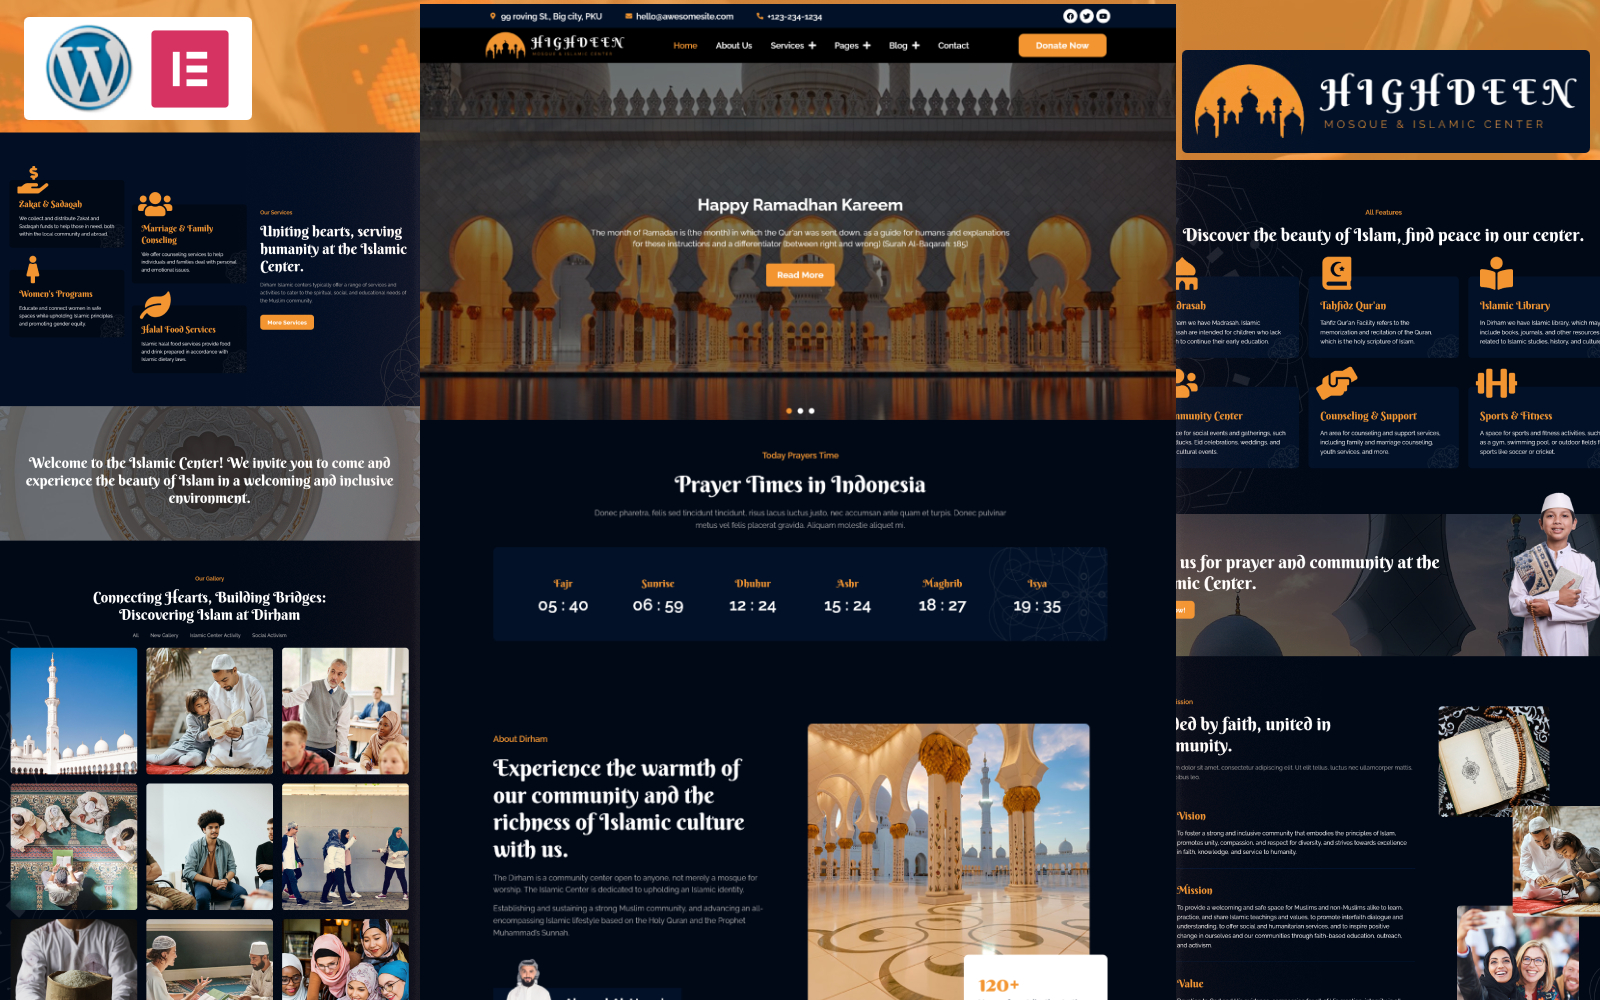 High Deen - Mosque & Islamic Center WordPress Theme